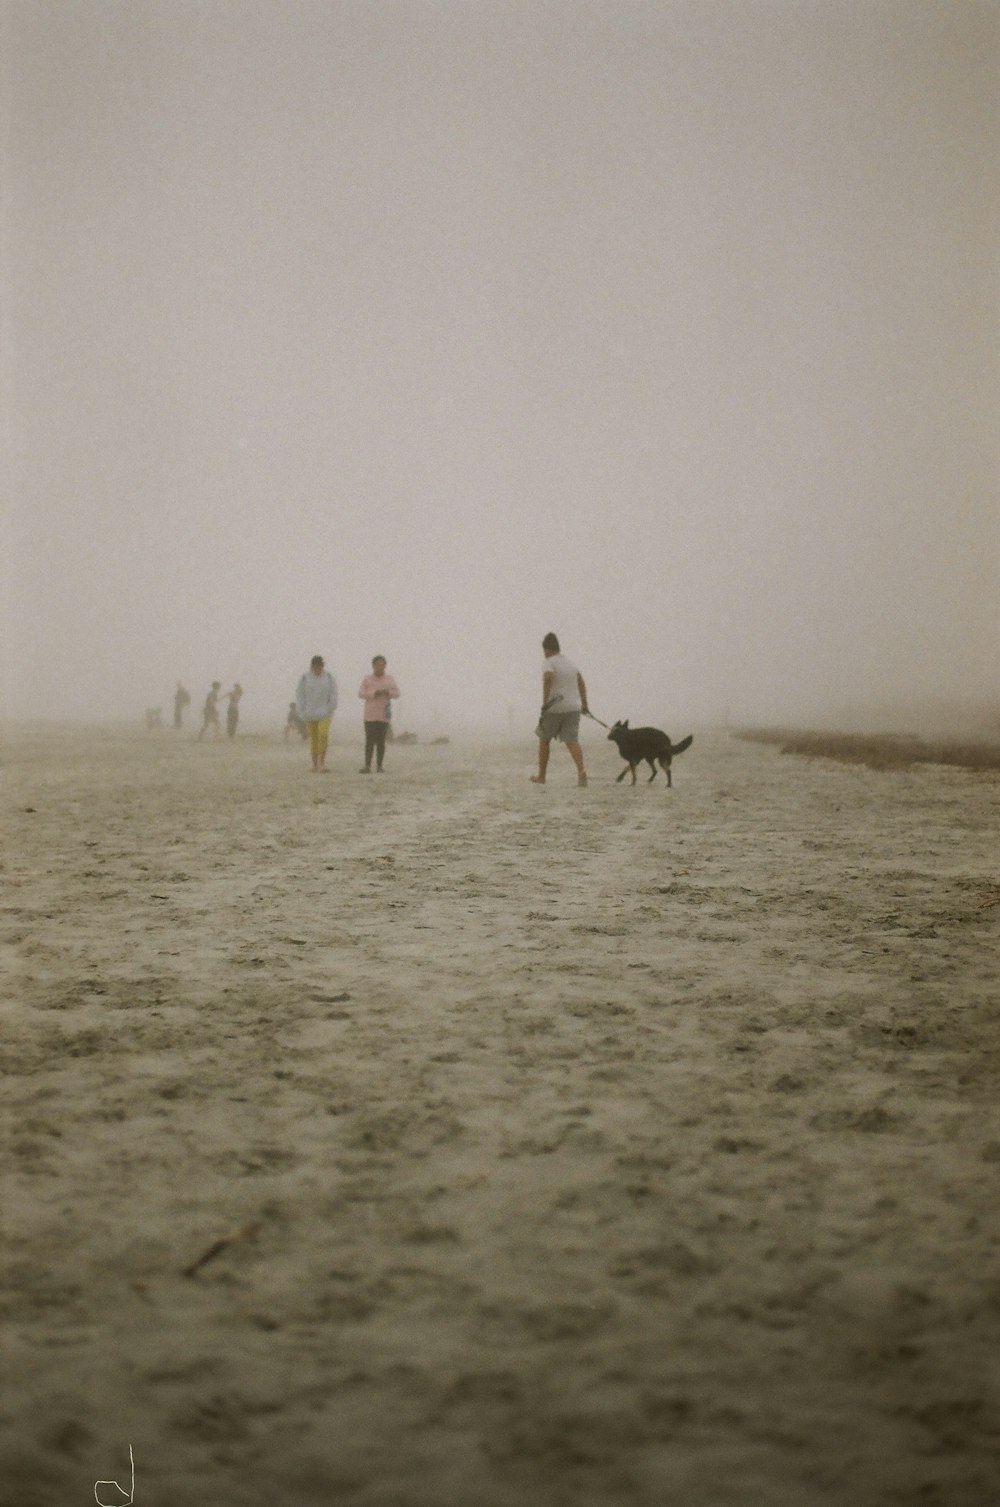 Un gruppo di persone che camminano attraverso una spiaggia sabbiosa